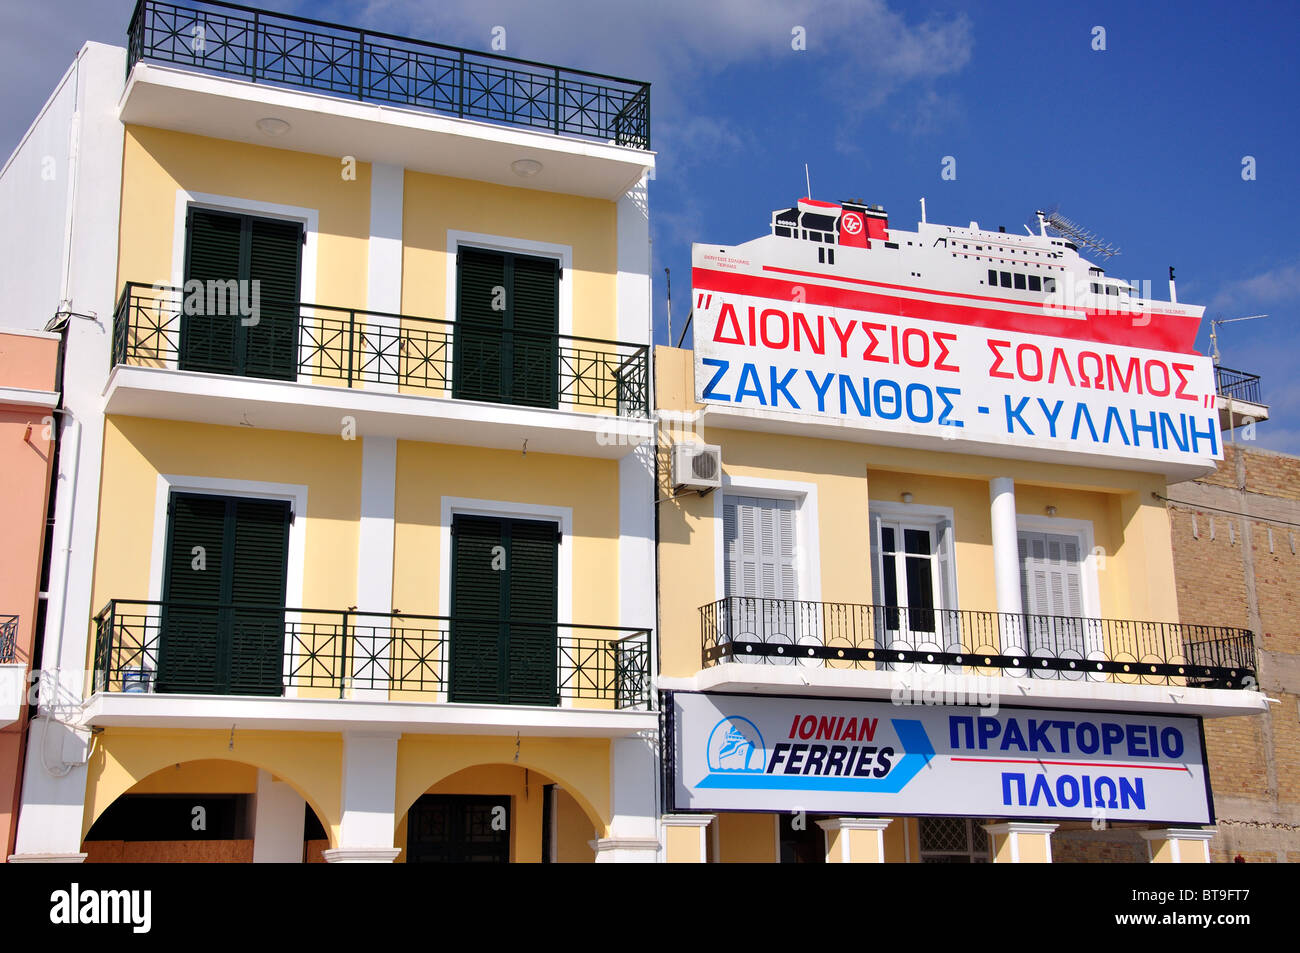 Bureau de l'entreprise Ferry, Strada Marina, la ville de Zakynthos, Zante, îles Ioniennes, Grèce Banque D'Images